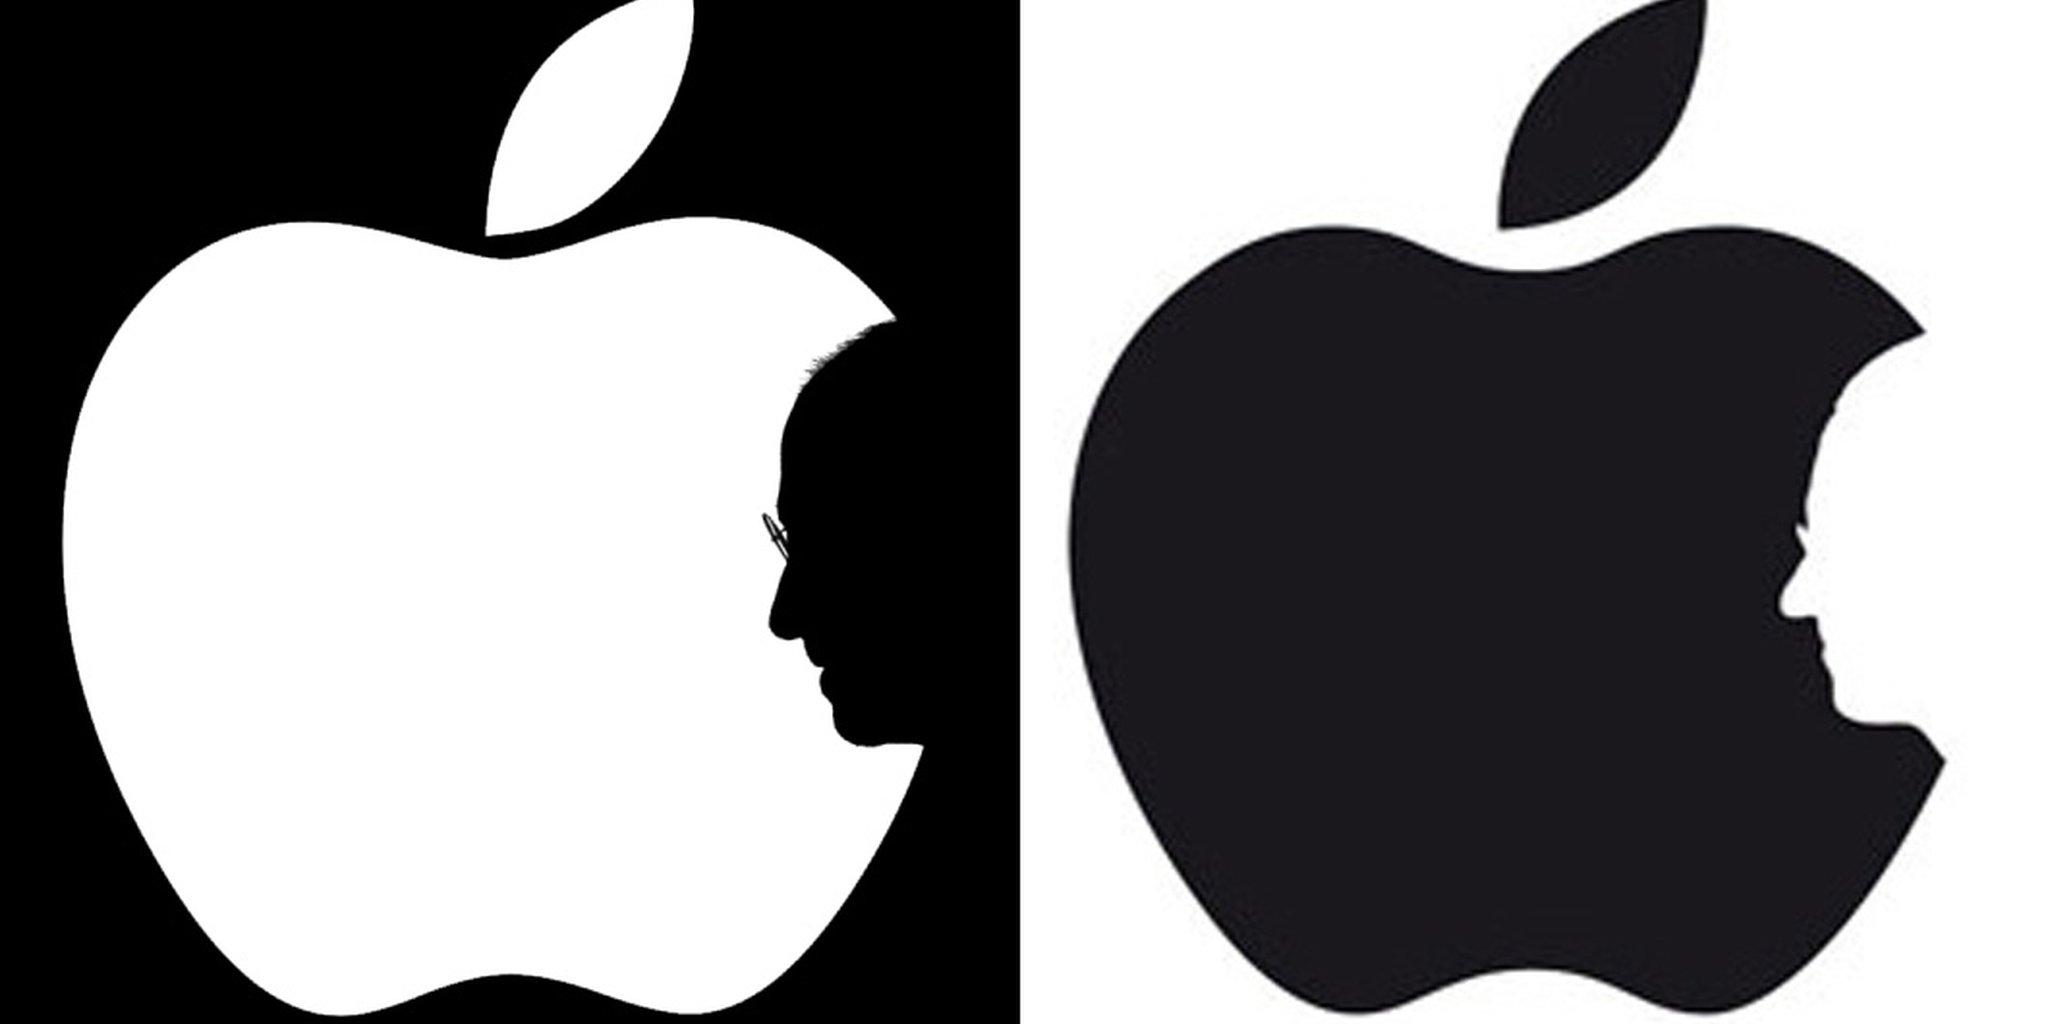 Steve Jobs Logo - Two illustrators claim credit for the same Steve Jobs portrait